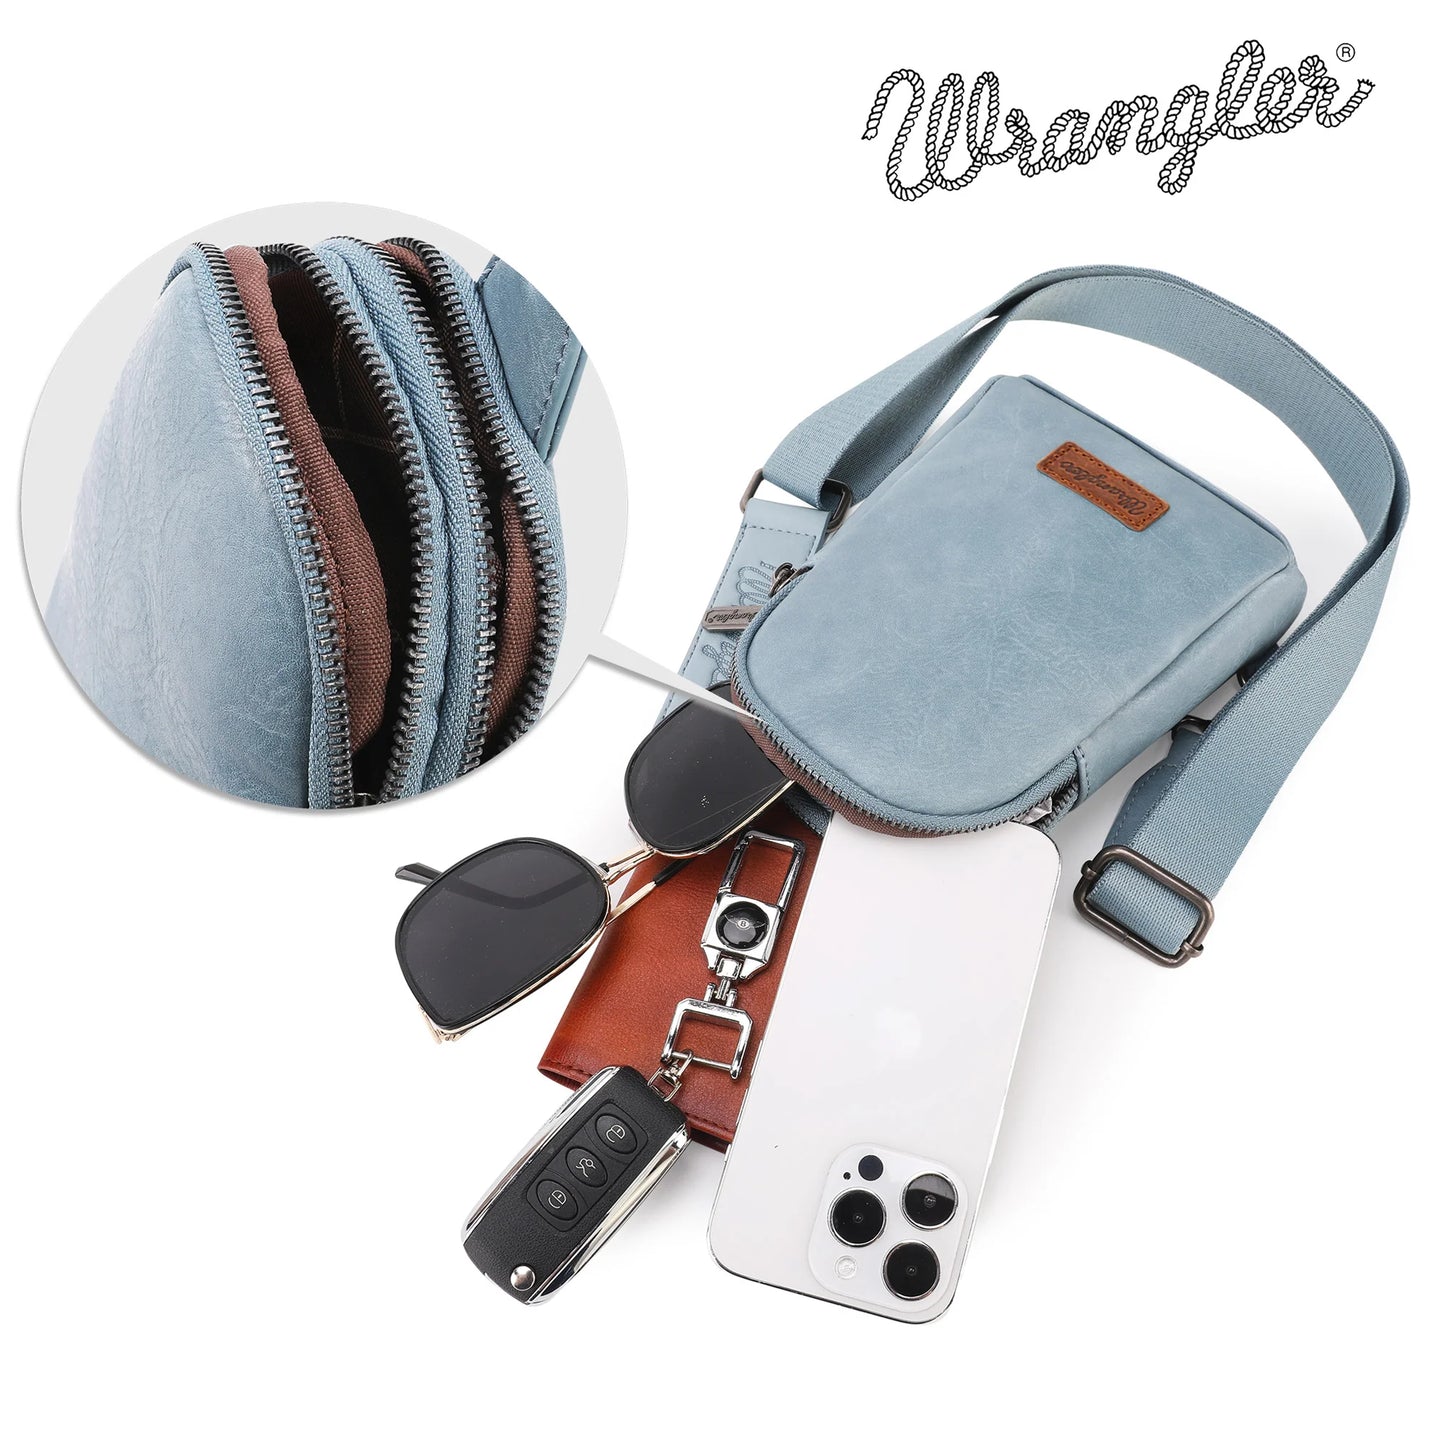 Wrangler Sling Bag/Crossbody/Chest Bag - Jean Blue